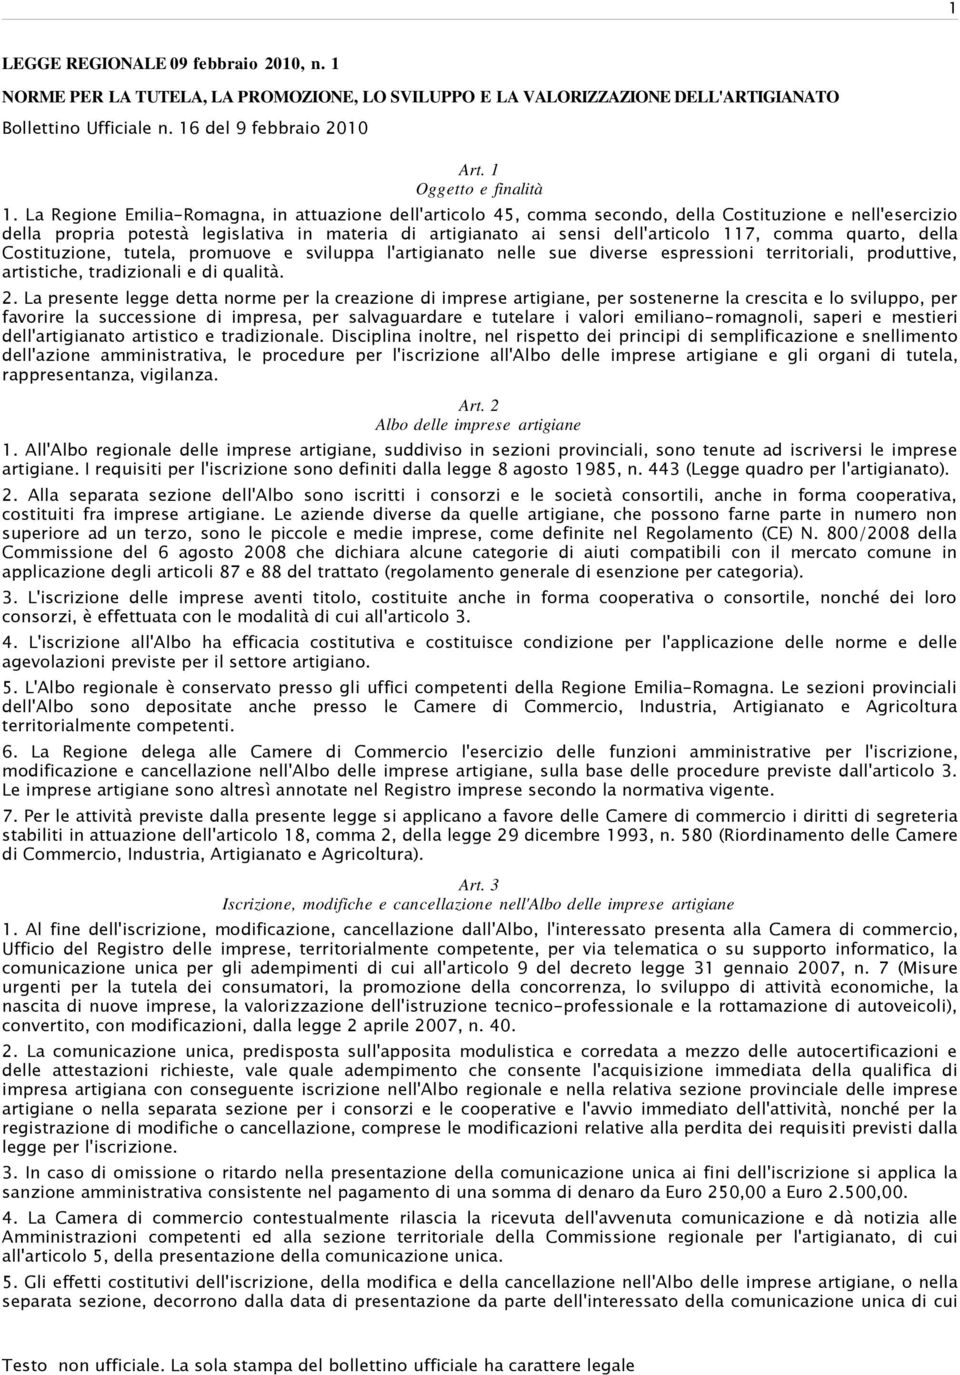 La Regione Emilia-Romagna, in attuazione dell'articolo 45, comma secondo, della Costituzione e nell'esercizio della propria potestà legislativa in materia di artigianato ai sensi dell'articolo 117,